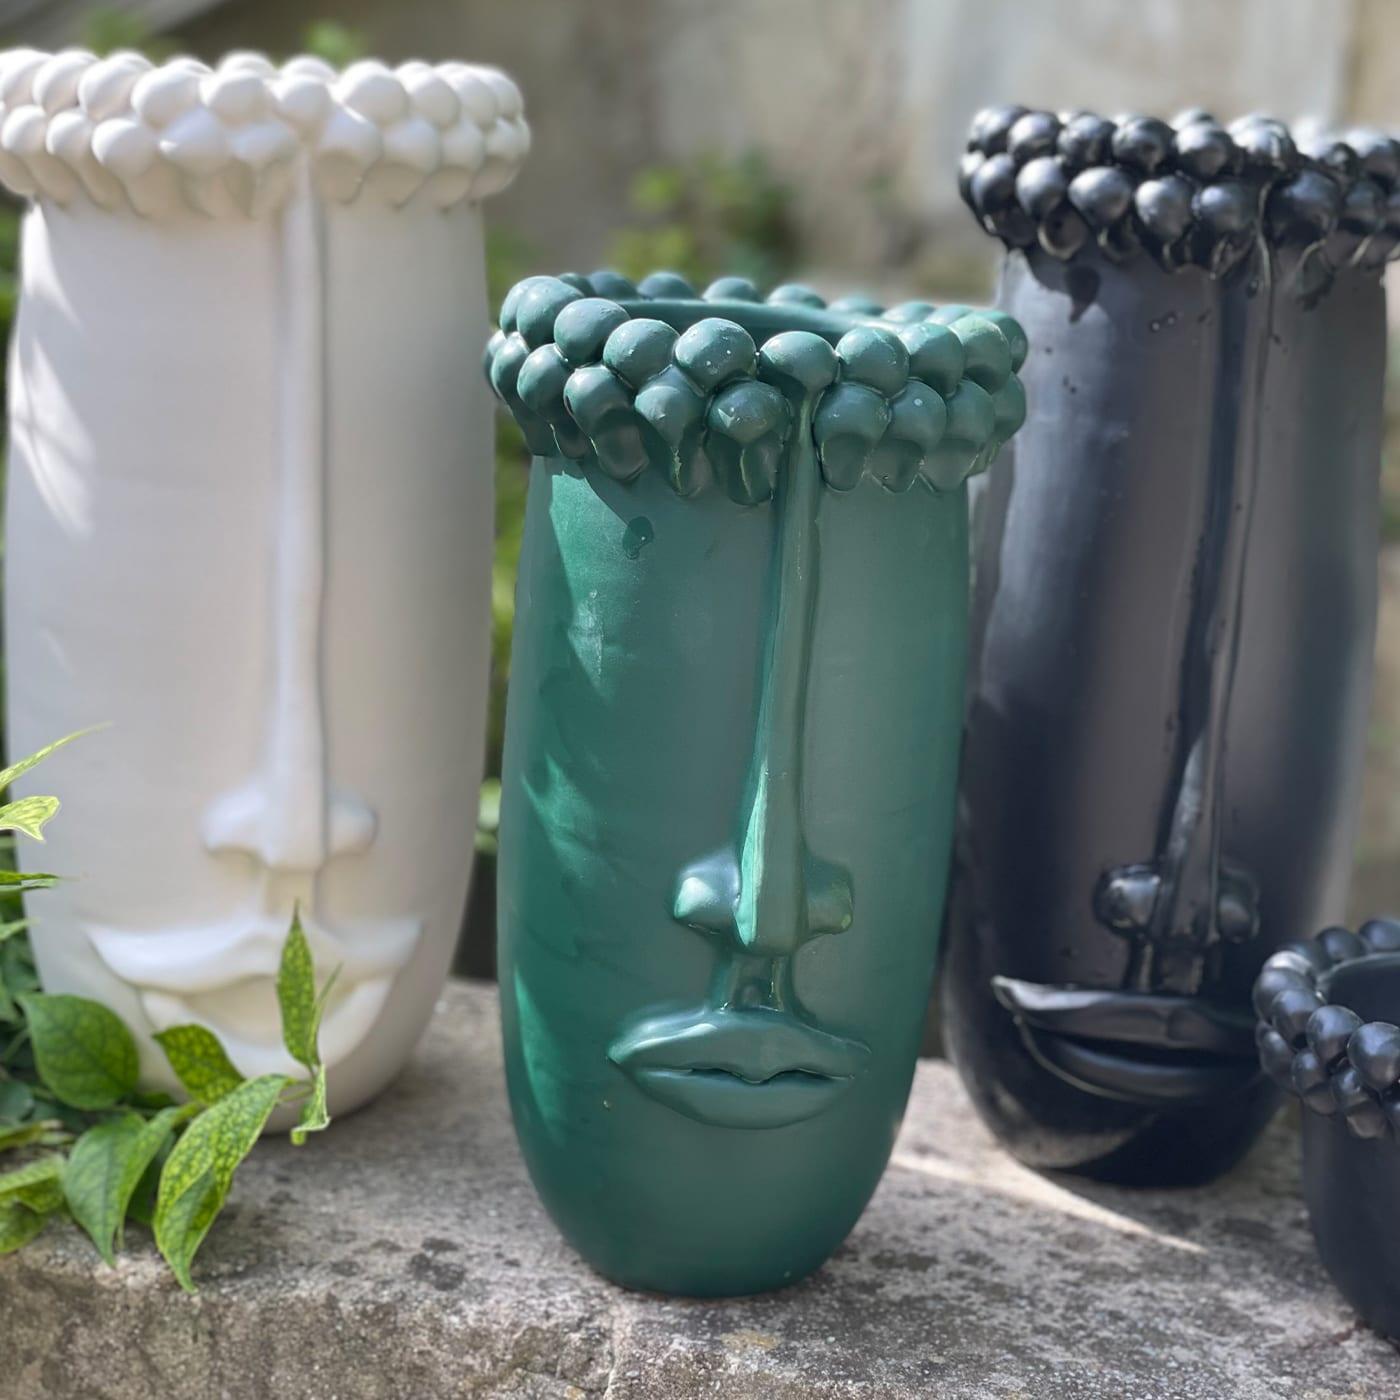 Un vase décoratif pour la maison, qui peut contenir de l'eau et des fleurs. Les pommes de pin au-dessus de la tête sont un élément qui caractérise la culture sicilienne : un symbole d'hospitalité et de bons vœux.